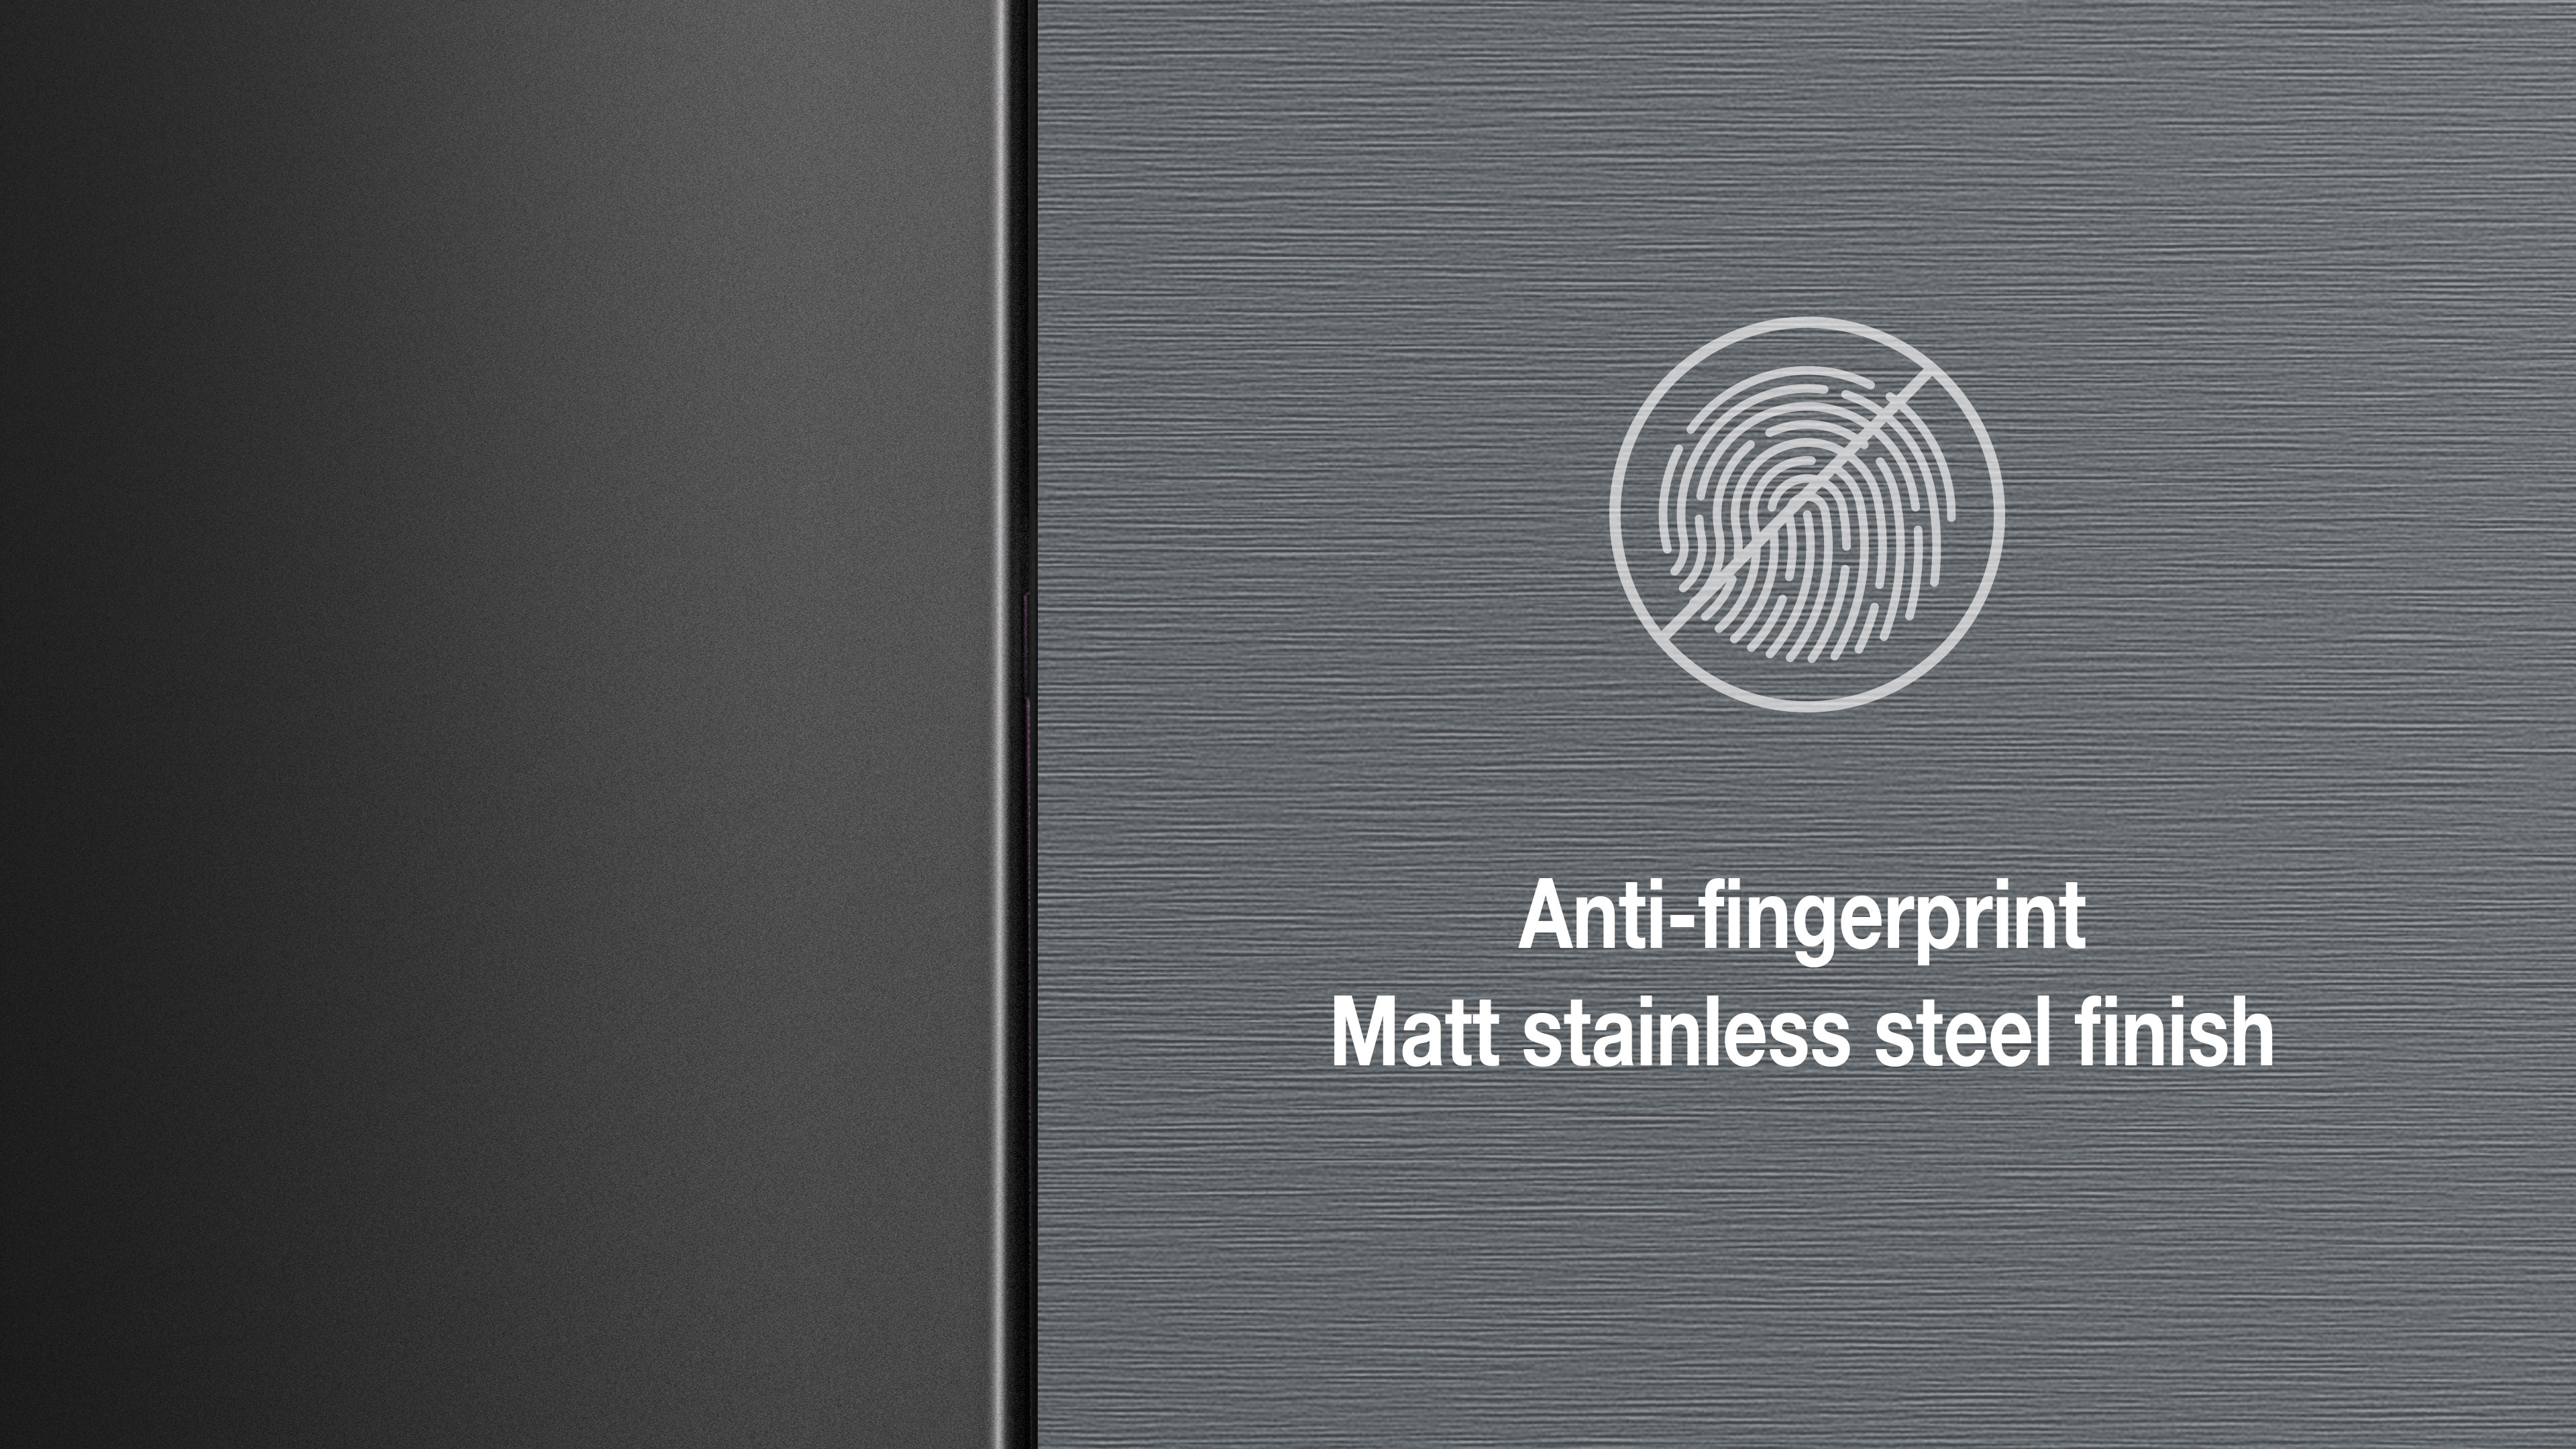 Anti-fingerprint površina sa mat završnicom i izgledom nerđajućeg čelika